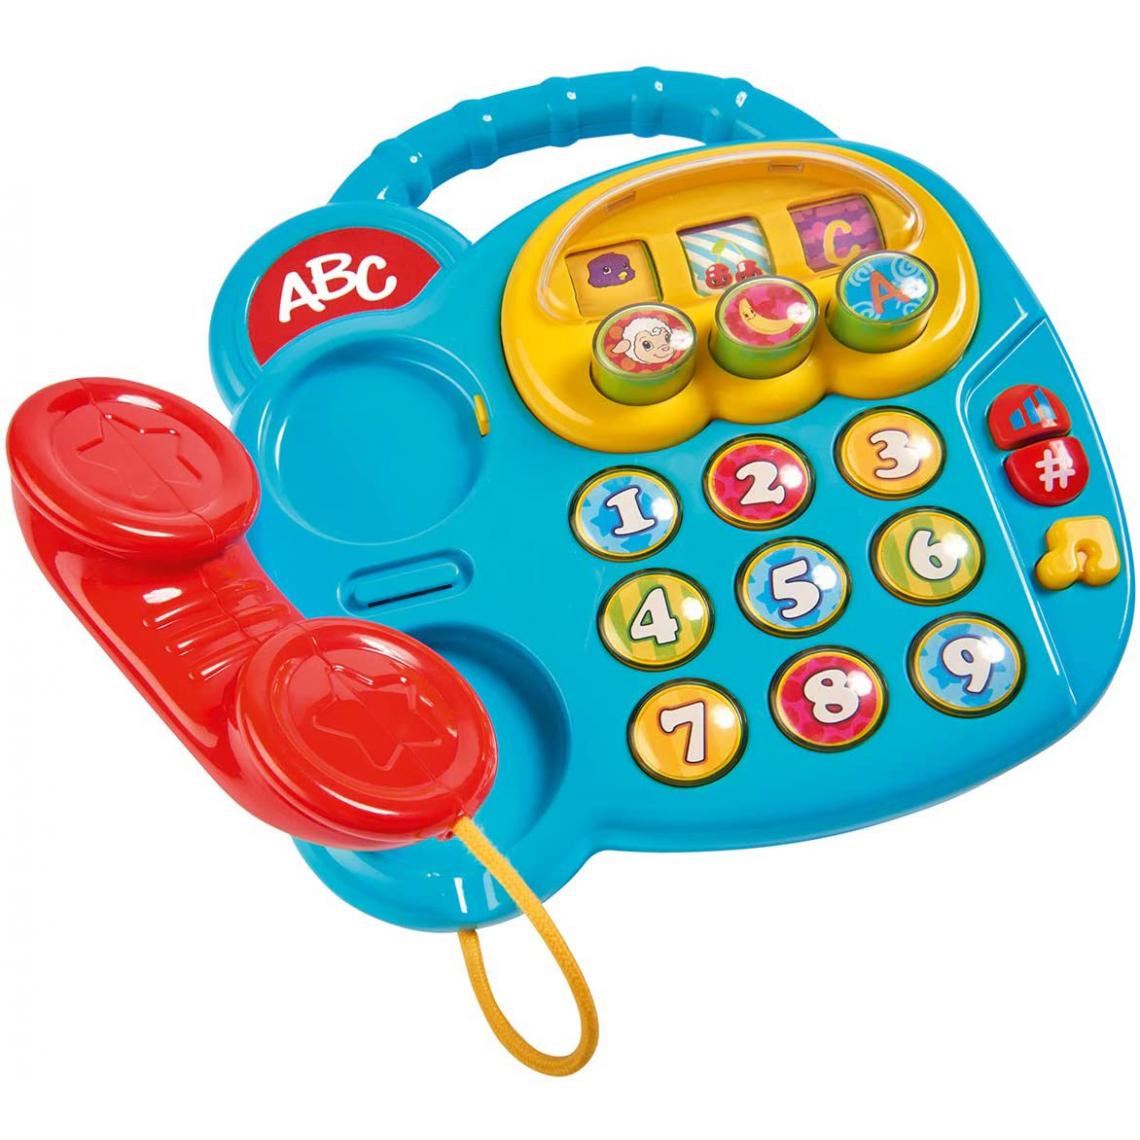 Abc - Telephone d eveil - Accessoire enfant